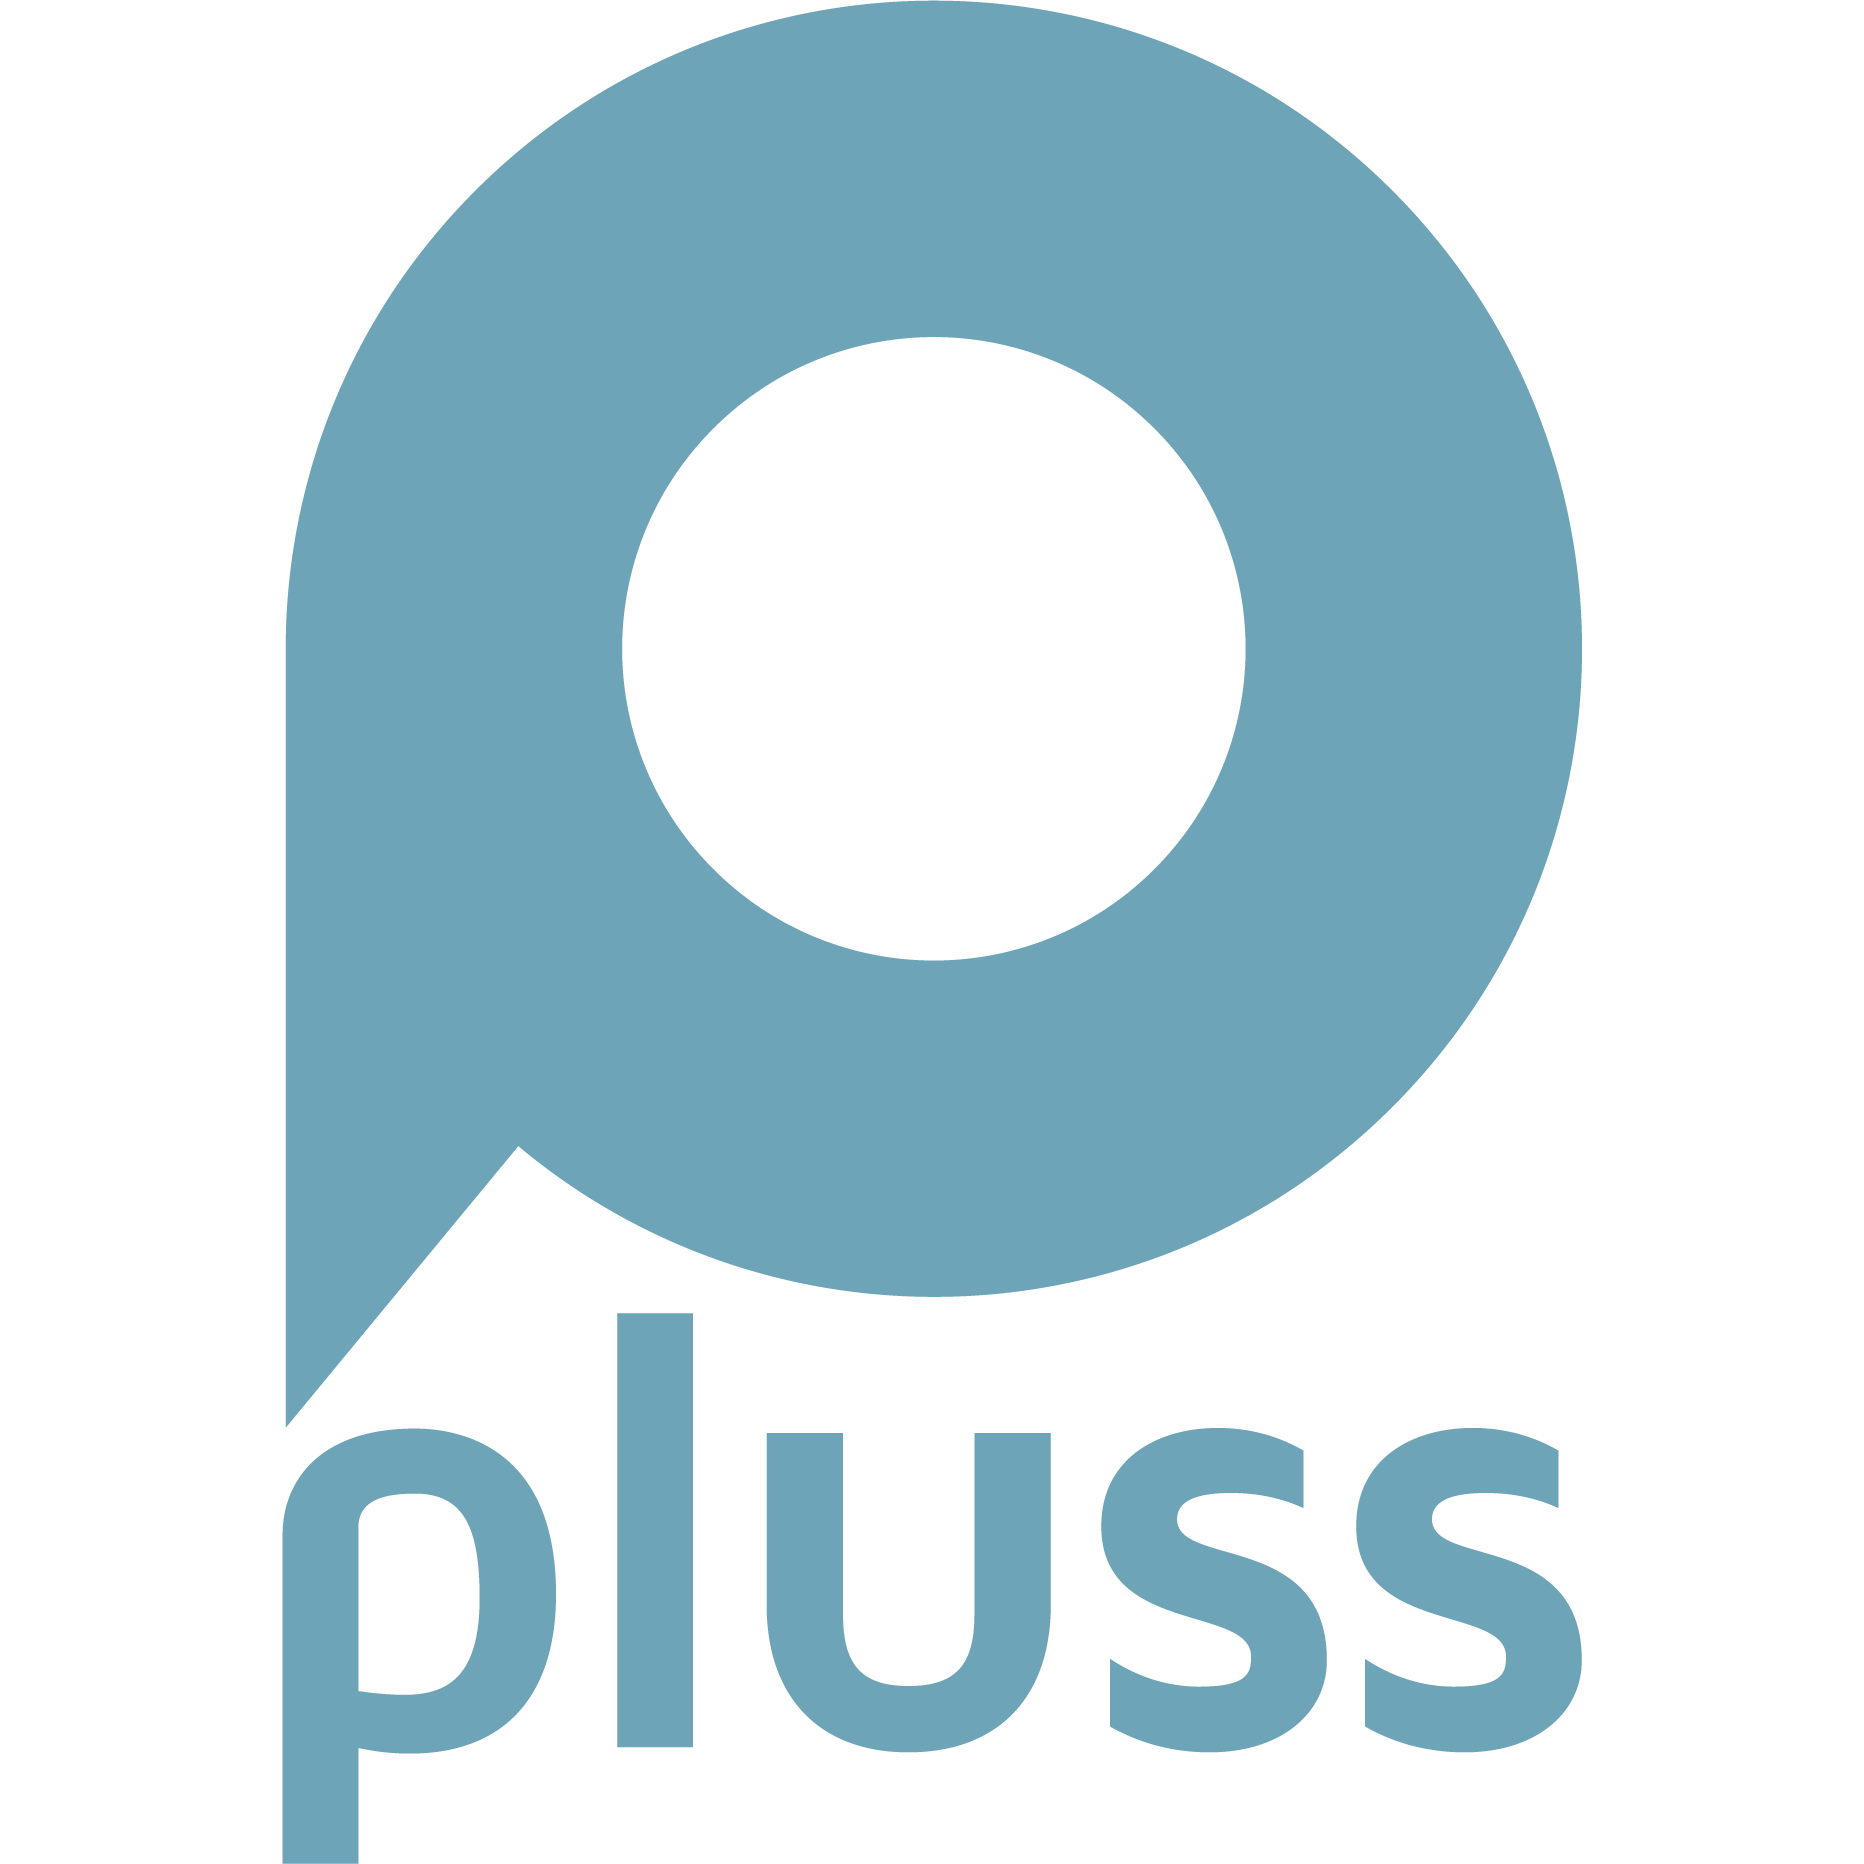 pluss Kassel - Care People (Medizin/Pflege) & Bildung und Soziales in Kassel - Logo